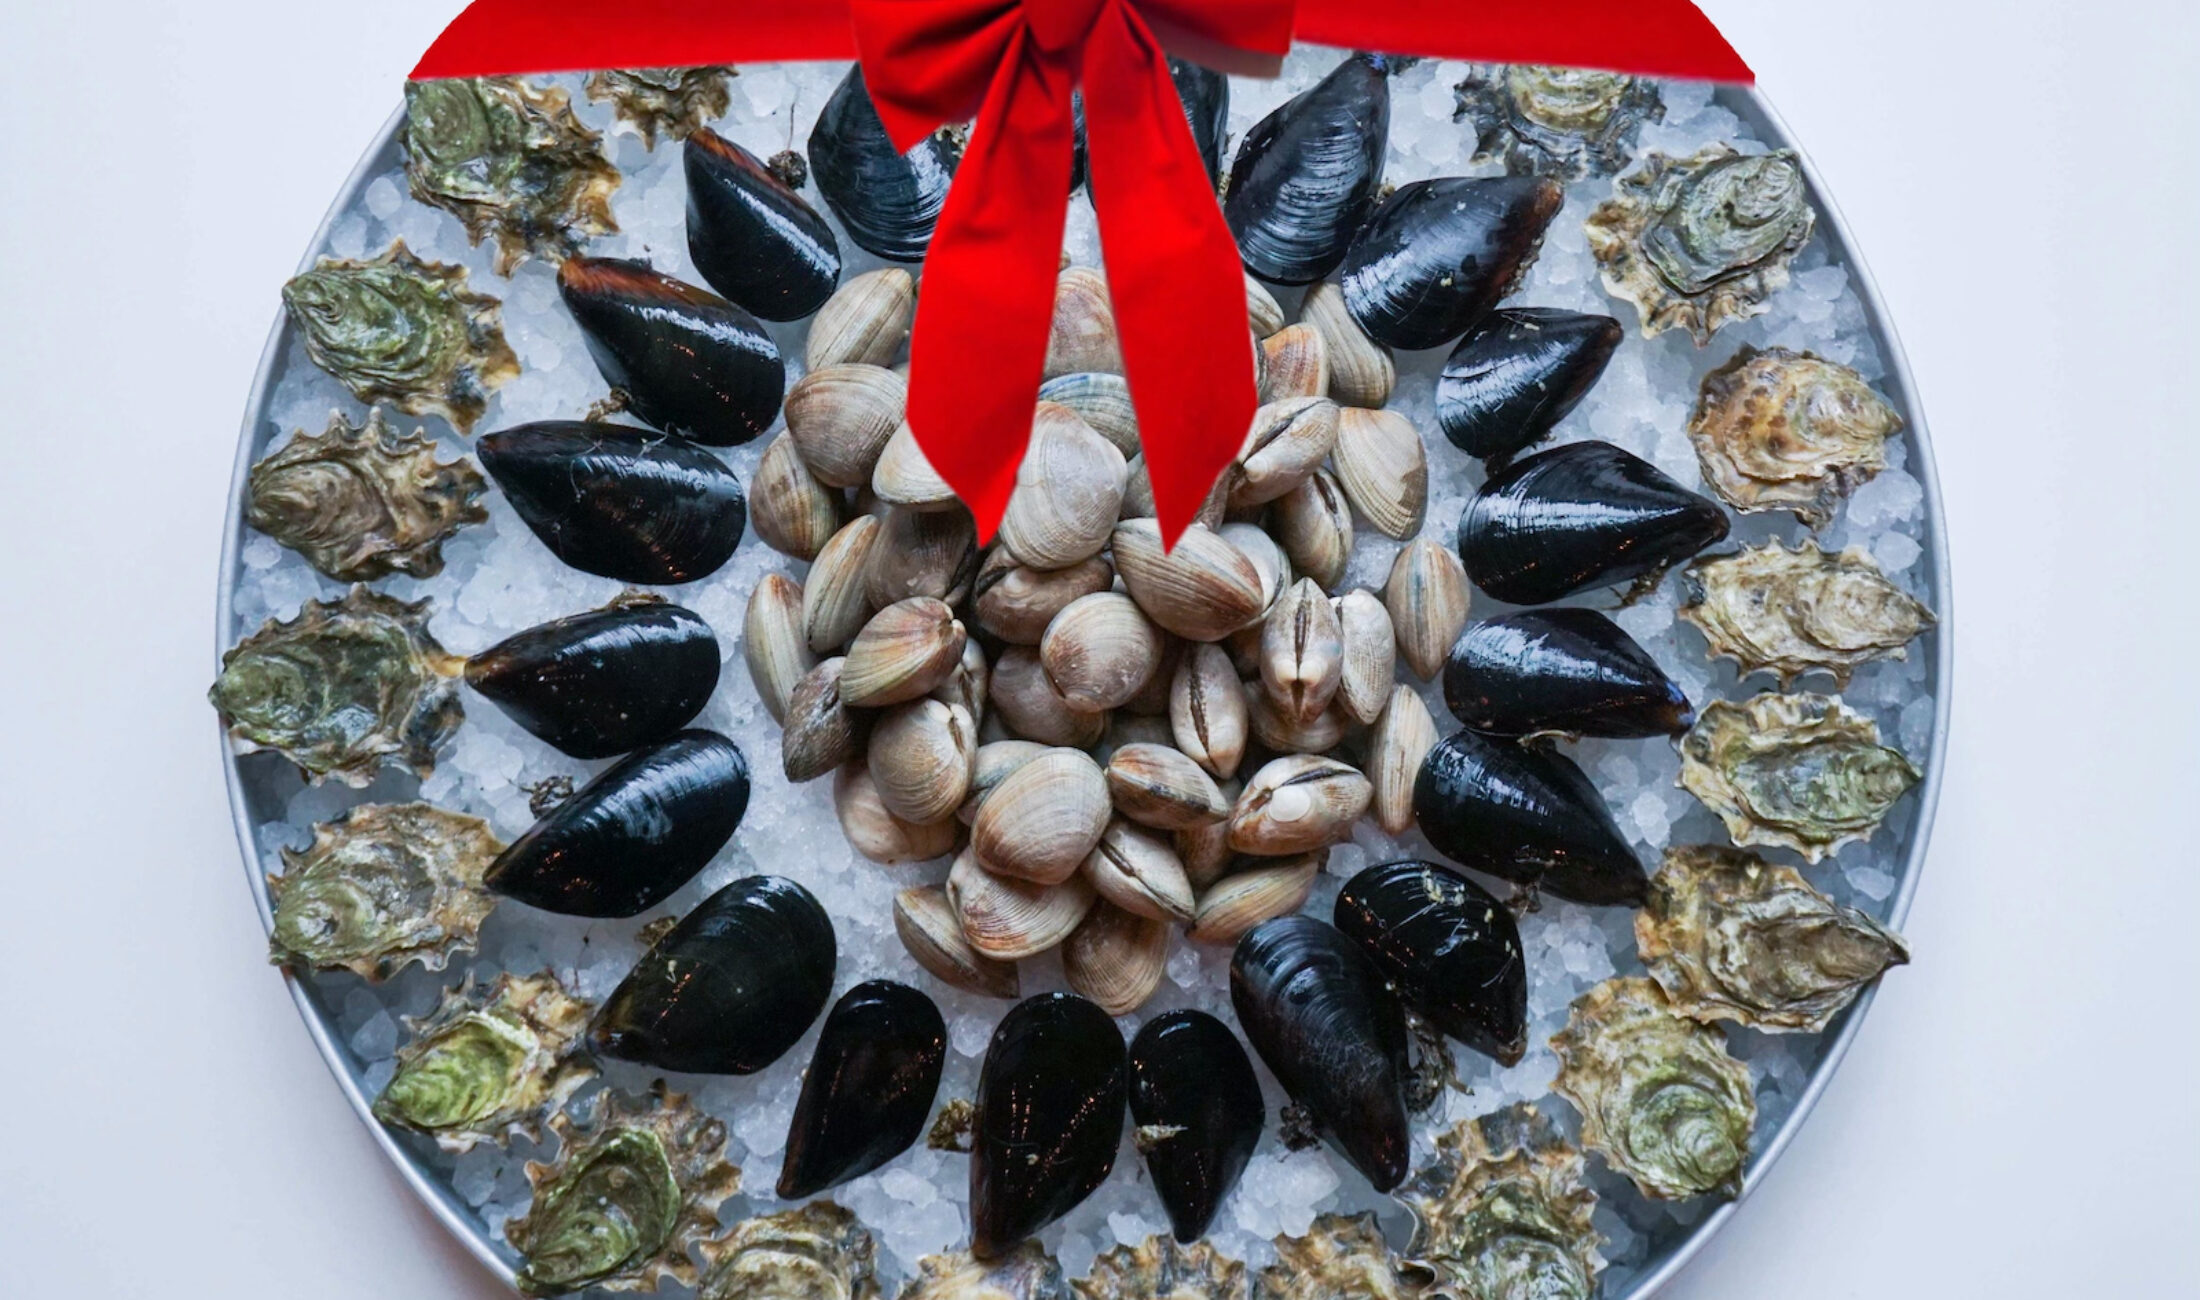 范尼湾牡蛎酒吧和贝类市场提供丰富的新鲜海鲜选择，适合节日盛宴